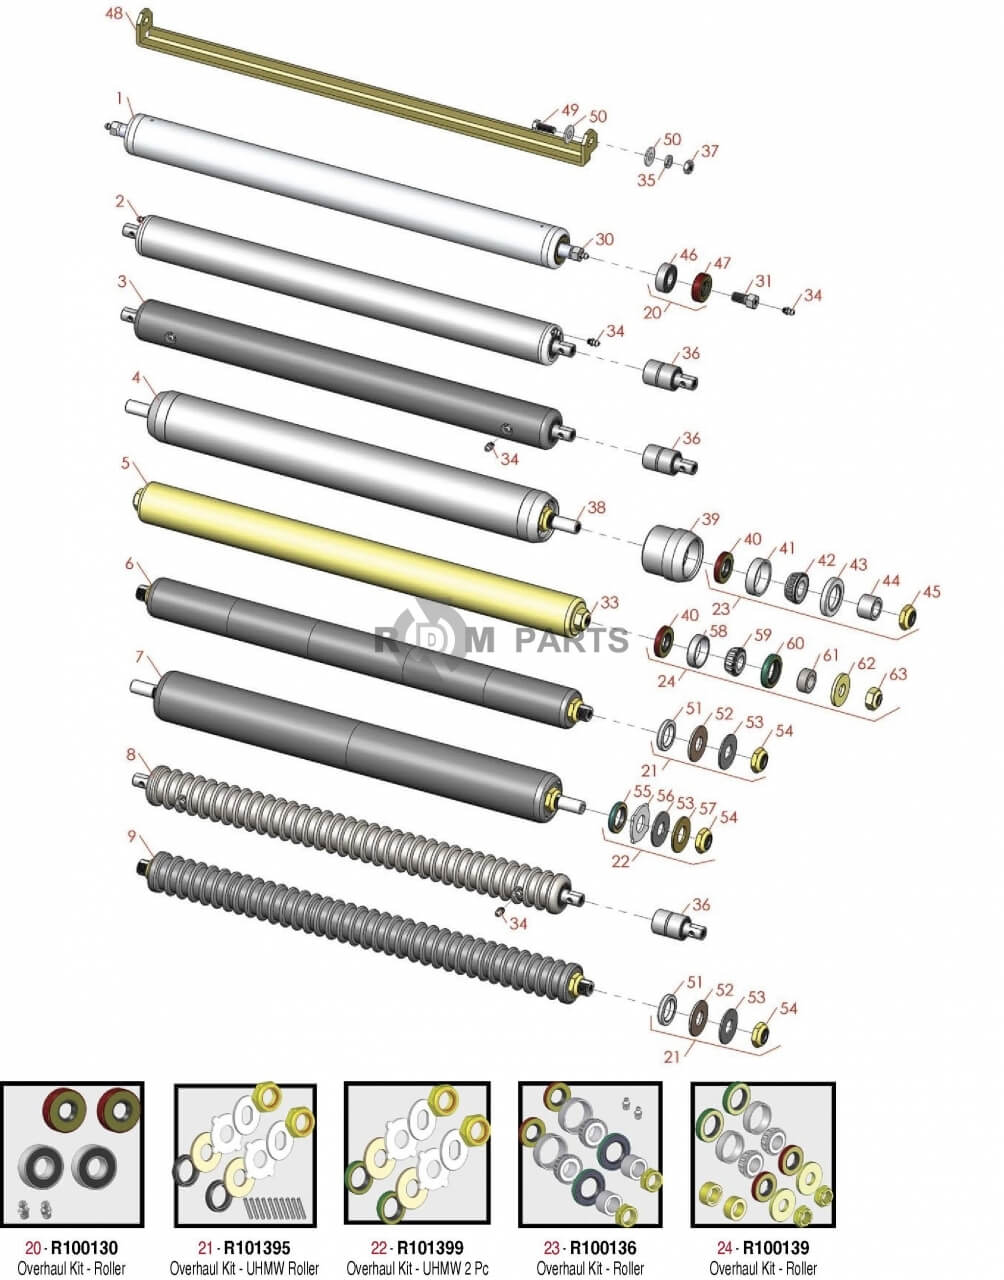 Replacement parts for Jacobsen E-Plex & E-Plex II Rear Rollers